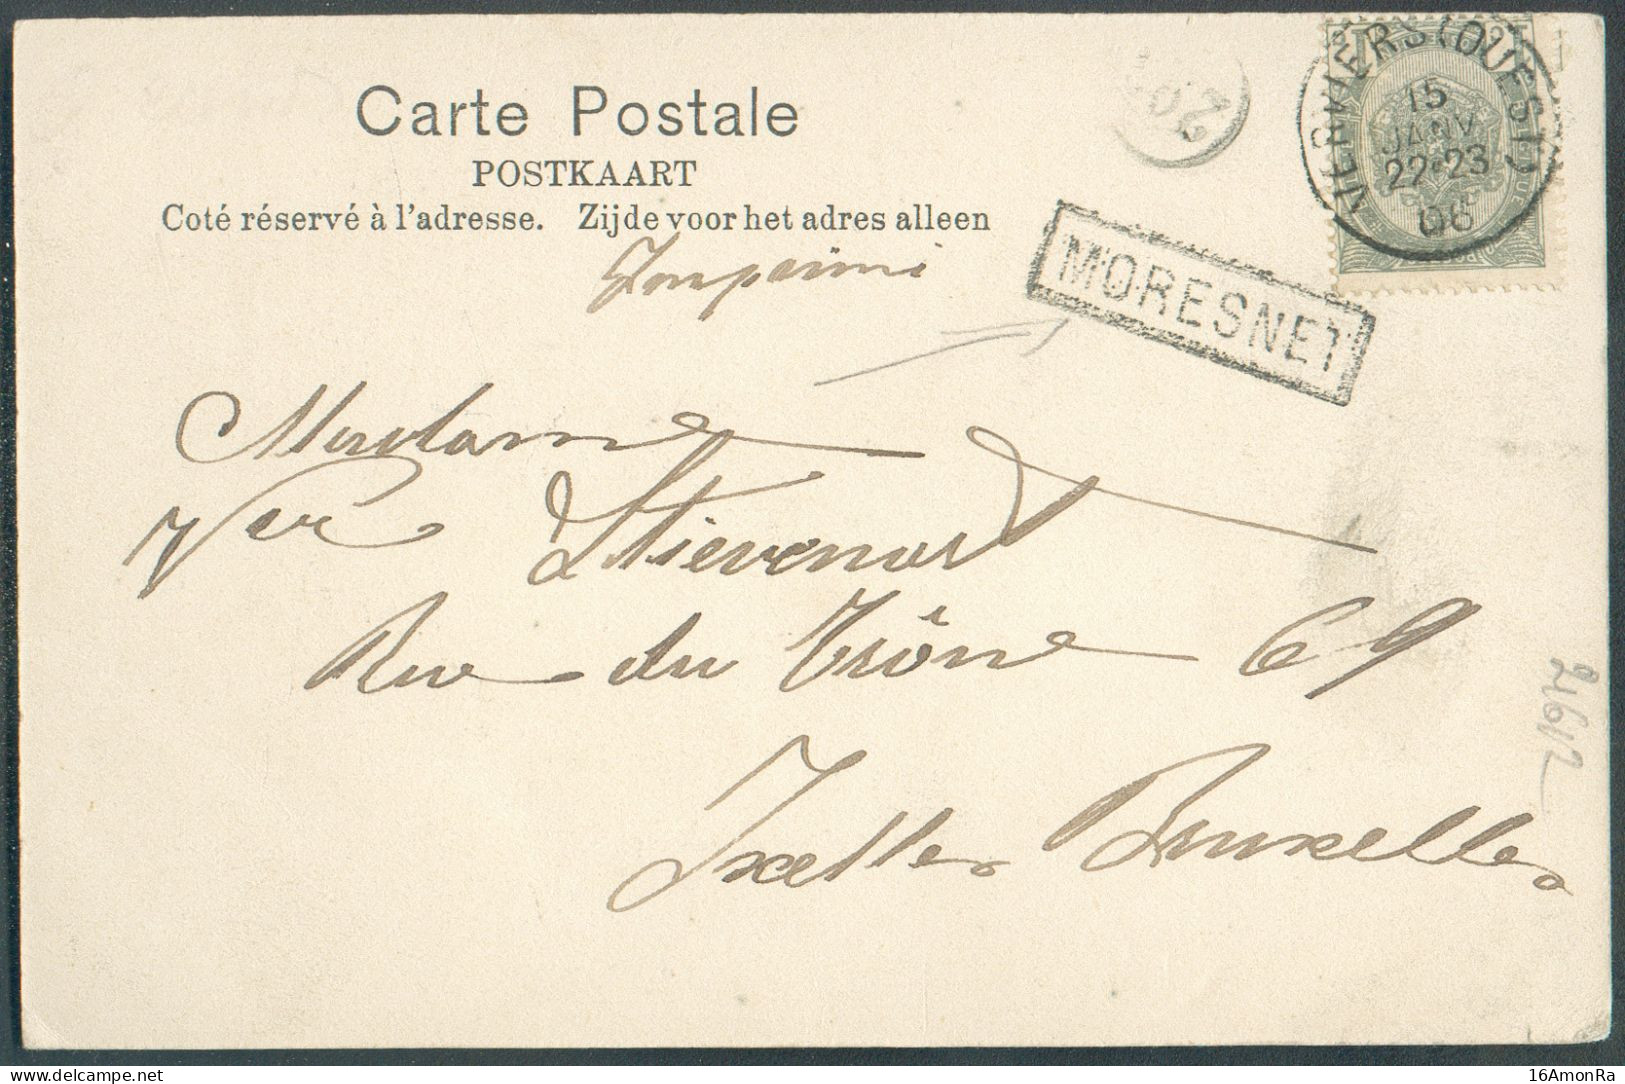 CANTONS De L'EST - N°53 - 1c. Obl. Sc VERVIERS (OUEST) Sur C.P. (Vue CHATEAU D' EULENBOURG Moresnet) Du 15 Janv. 1906 + - Sello Lineal